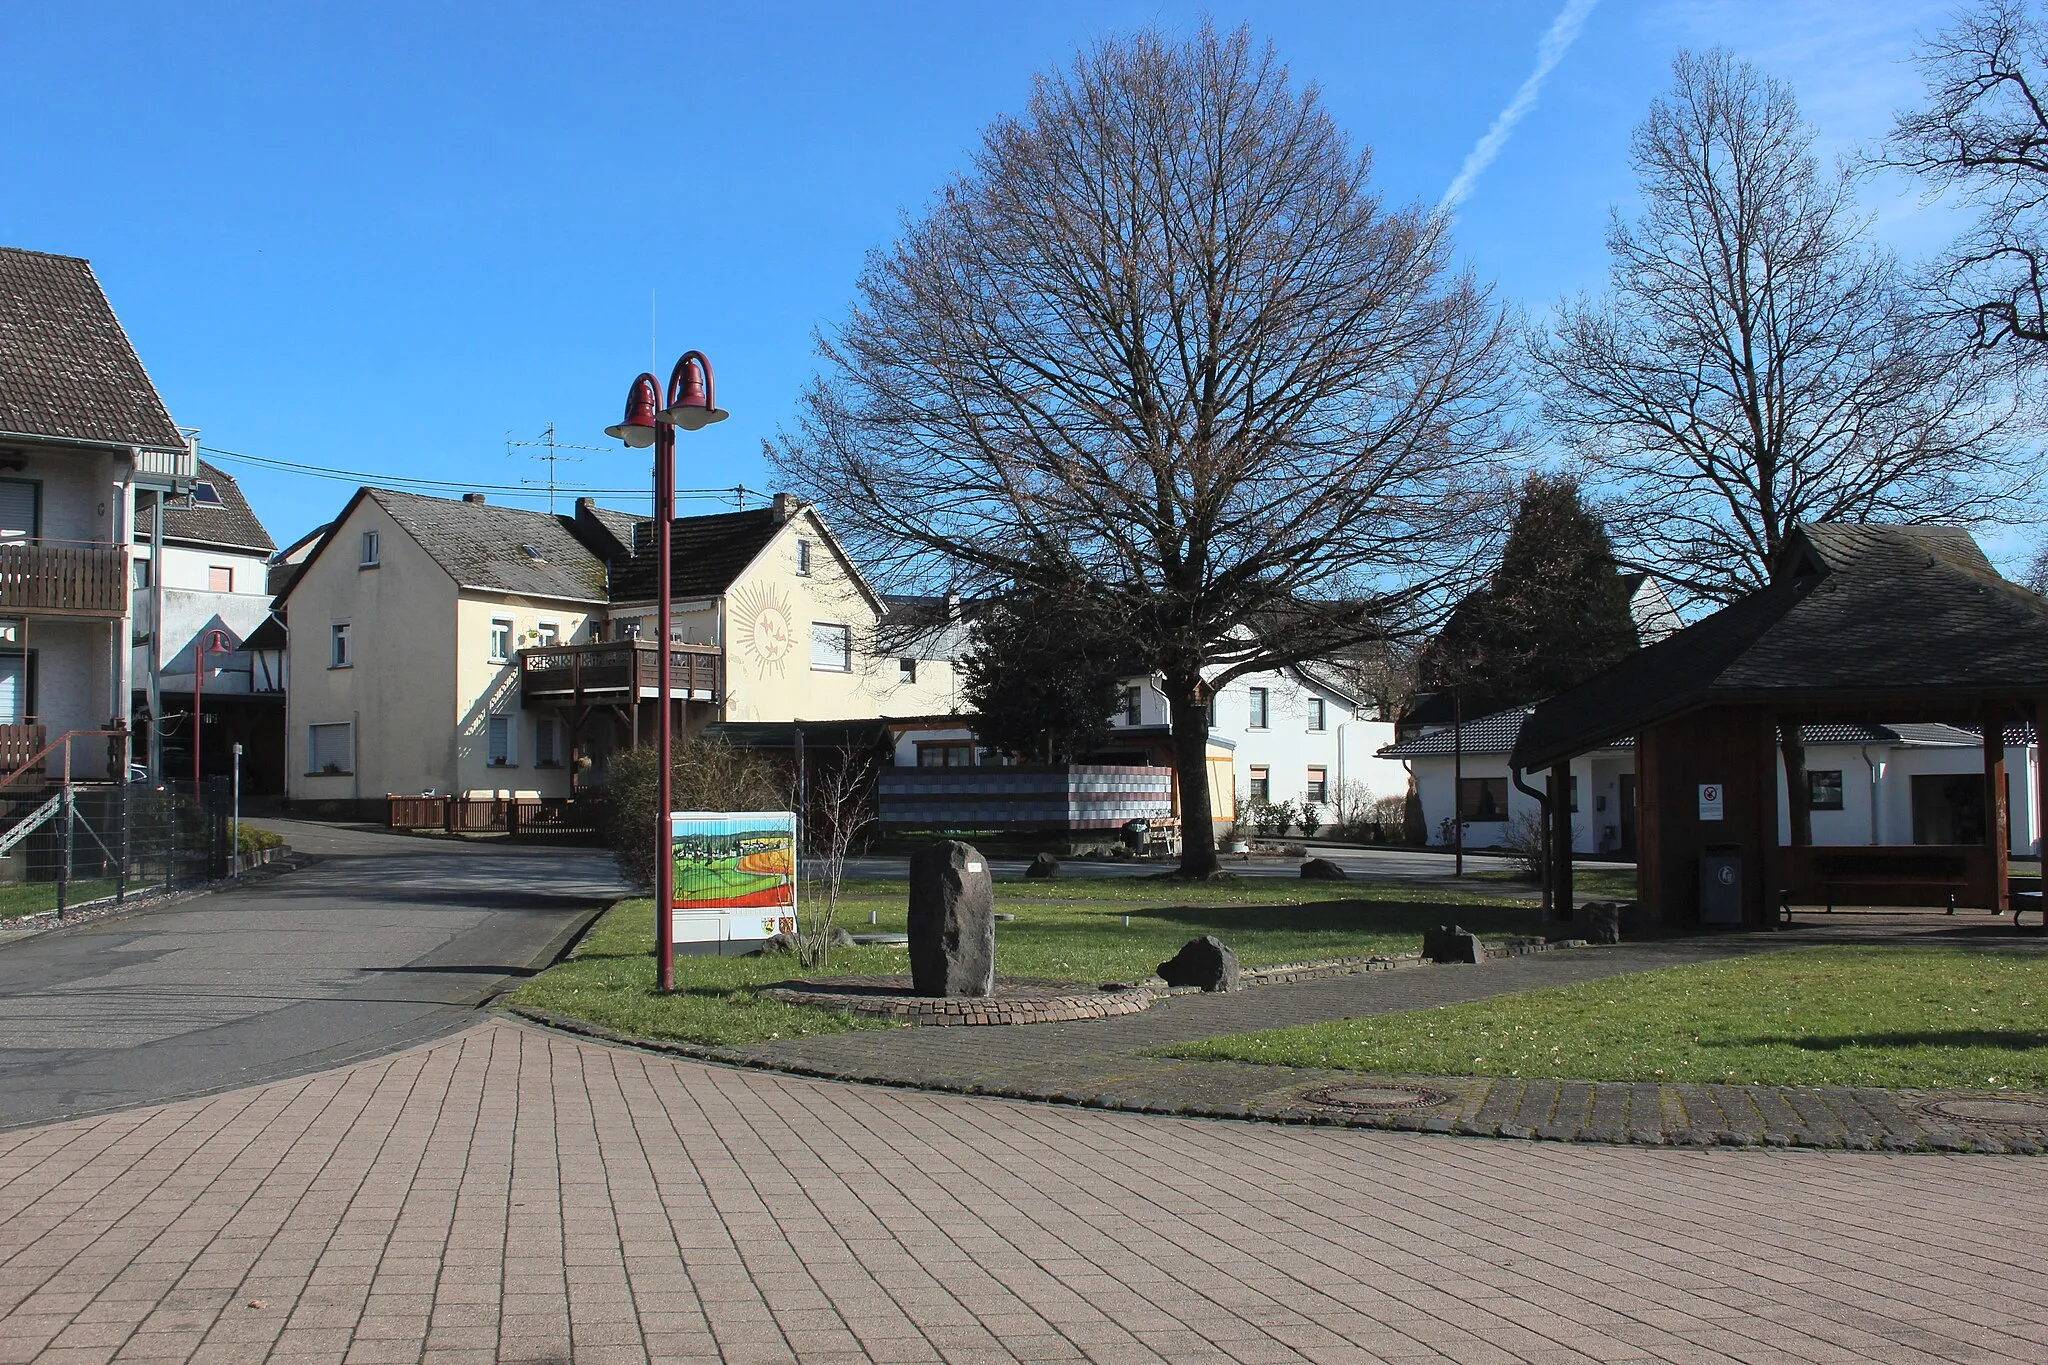 Photo showing: Hardert, Landkreis Neuwied, Rheinland-Pfalz